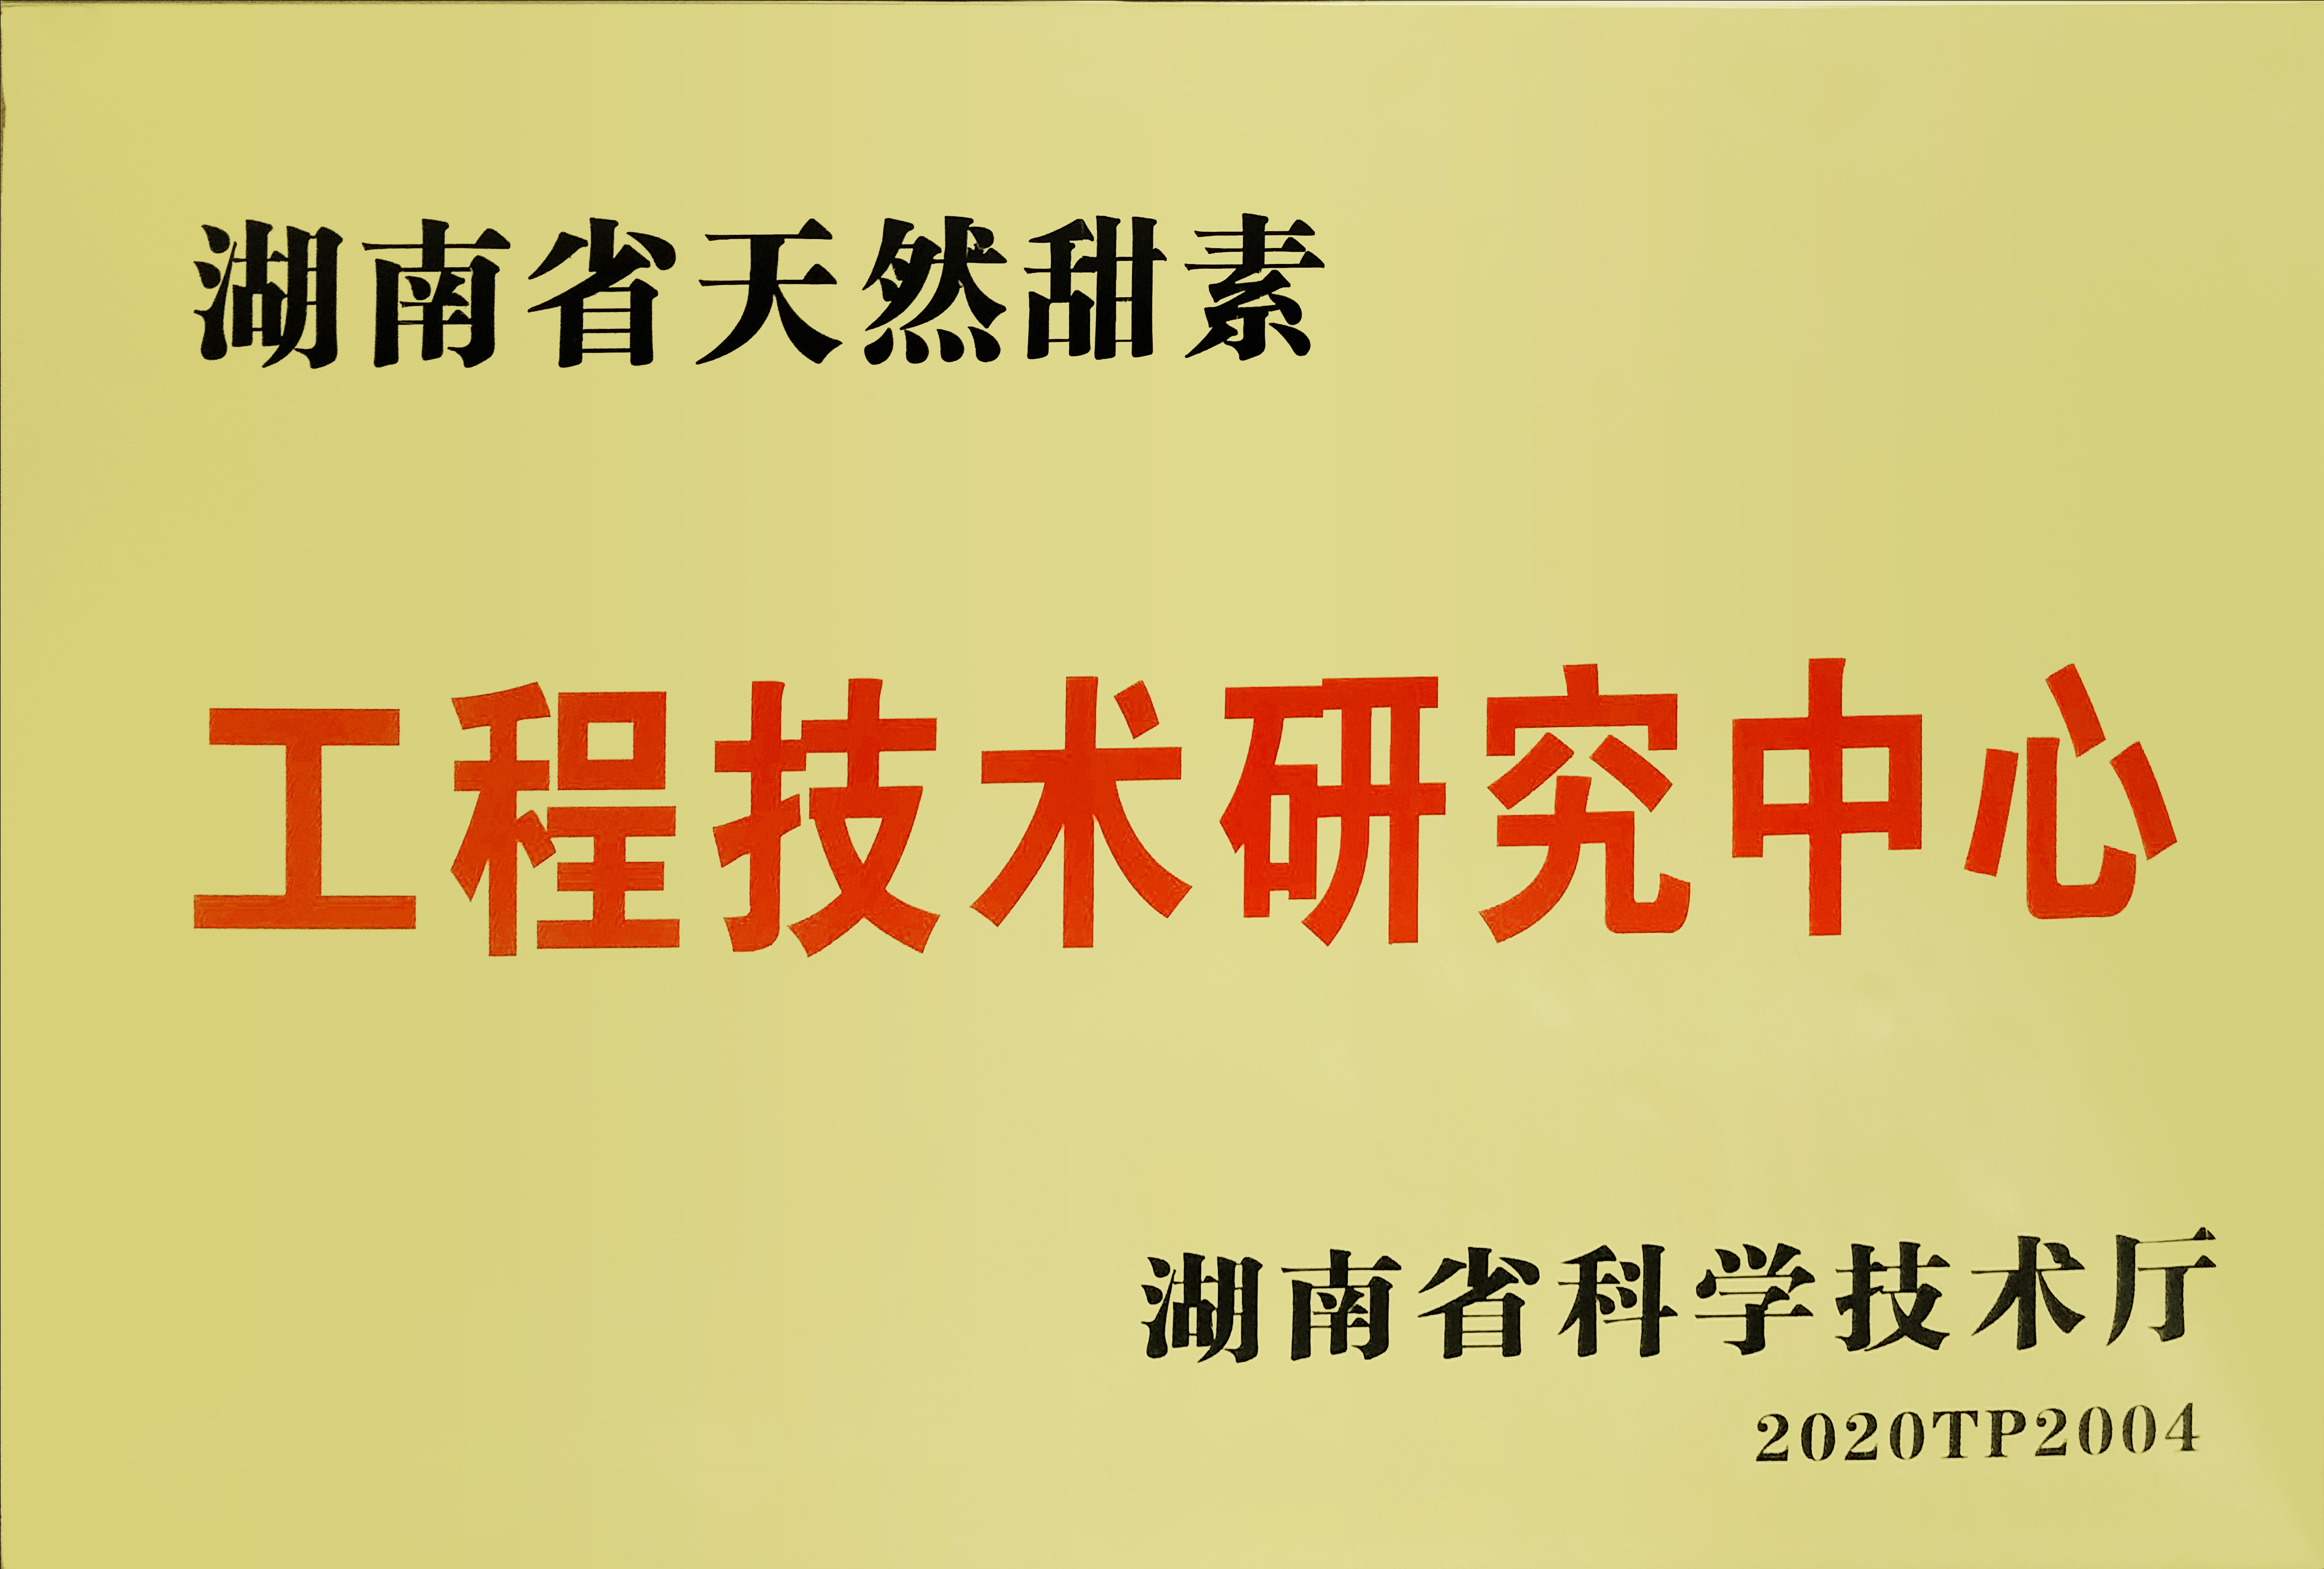 华诚生物“湖南省天然甜素工程技术研究中心”成功获批并授牌